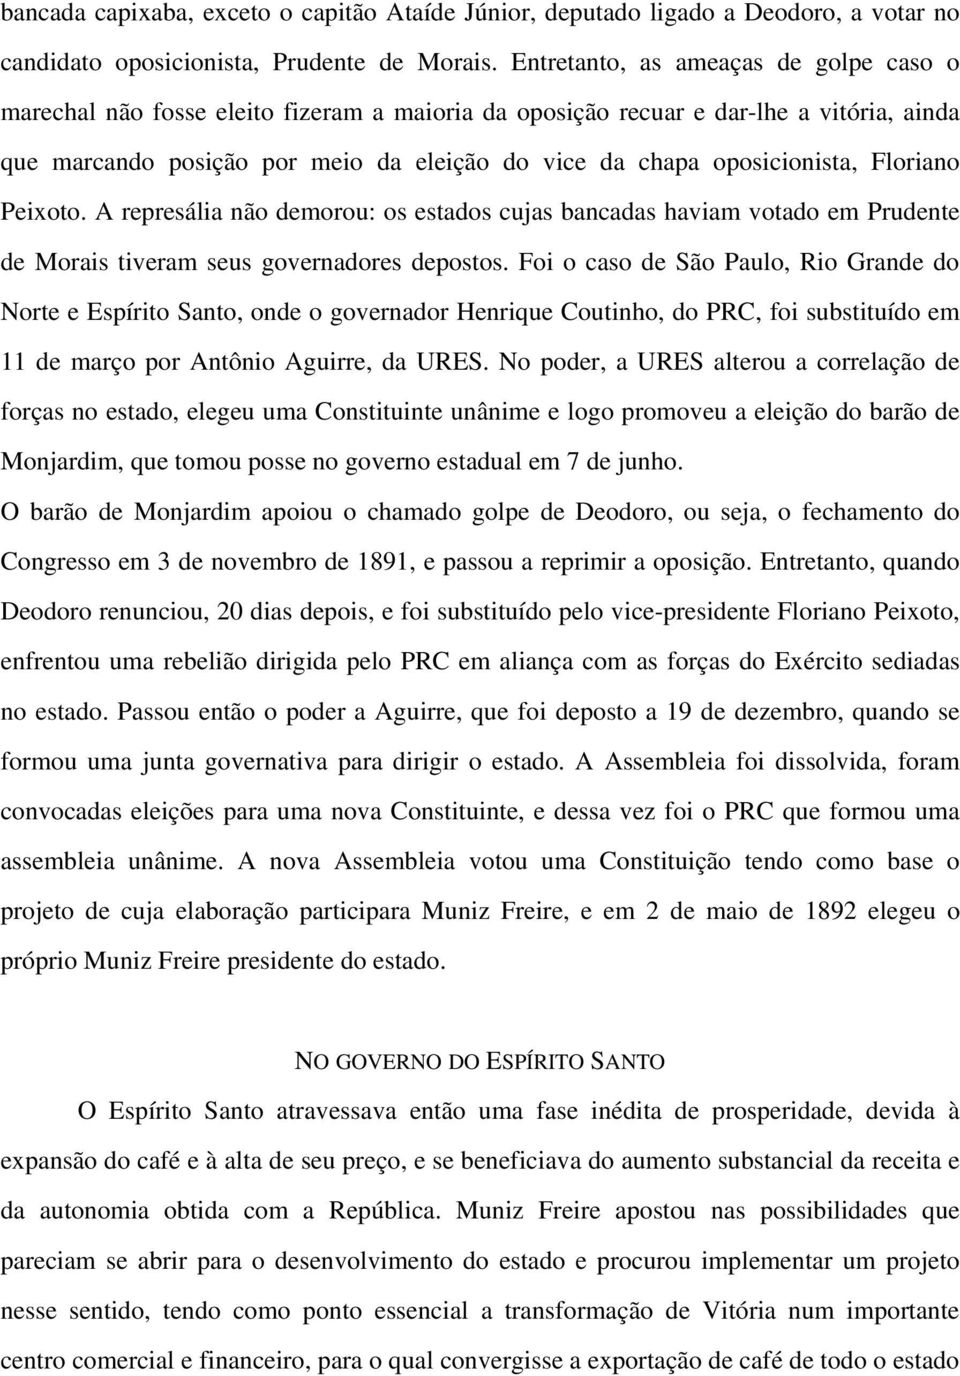 oposicionista, Floriano Peixoto. A represália não demorou: os estados cujas bancadas haviam votado em Prudente de Morais tiveram seus governadores depostos.